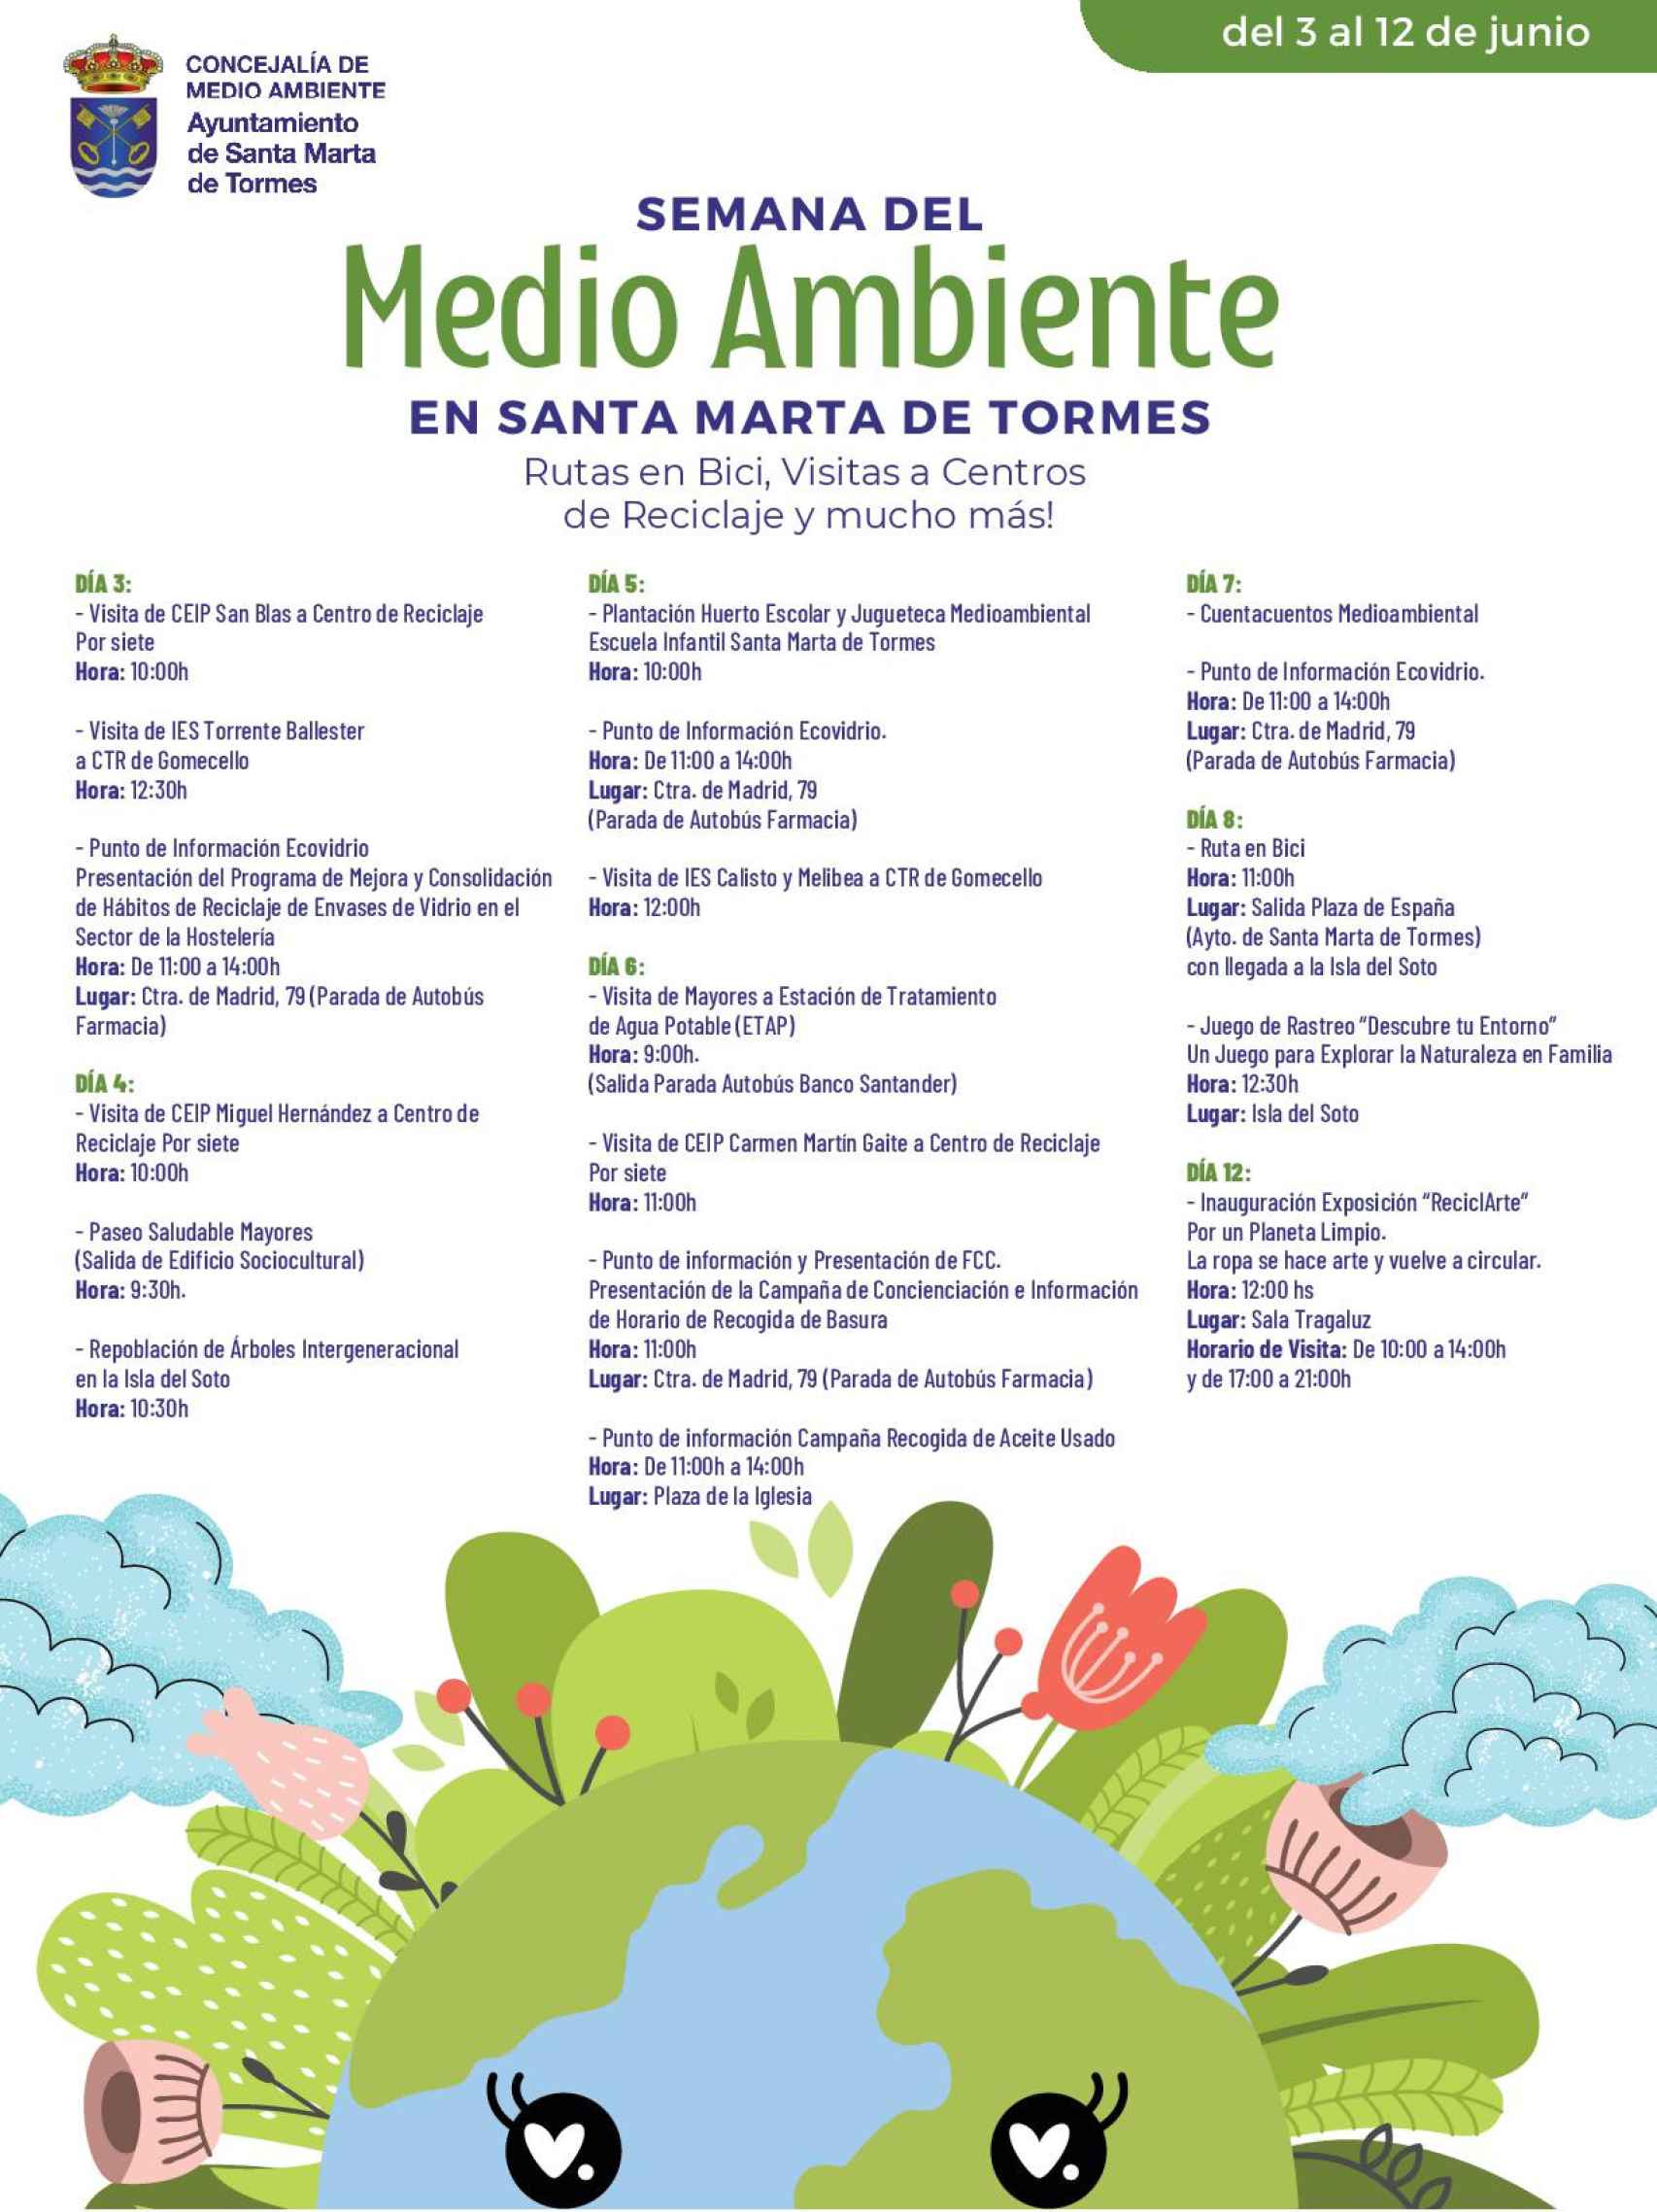 MEDIO AMBIENTE GESS programa-001